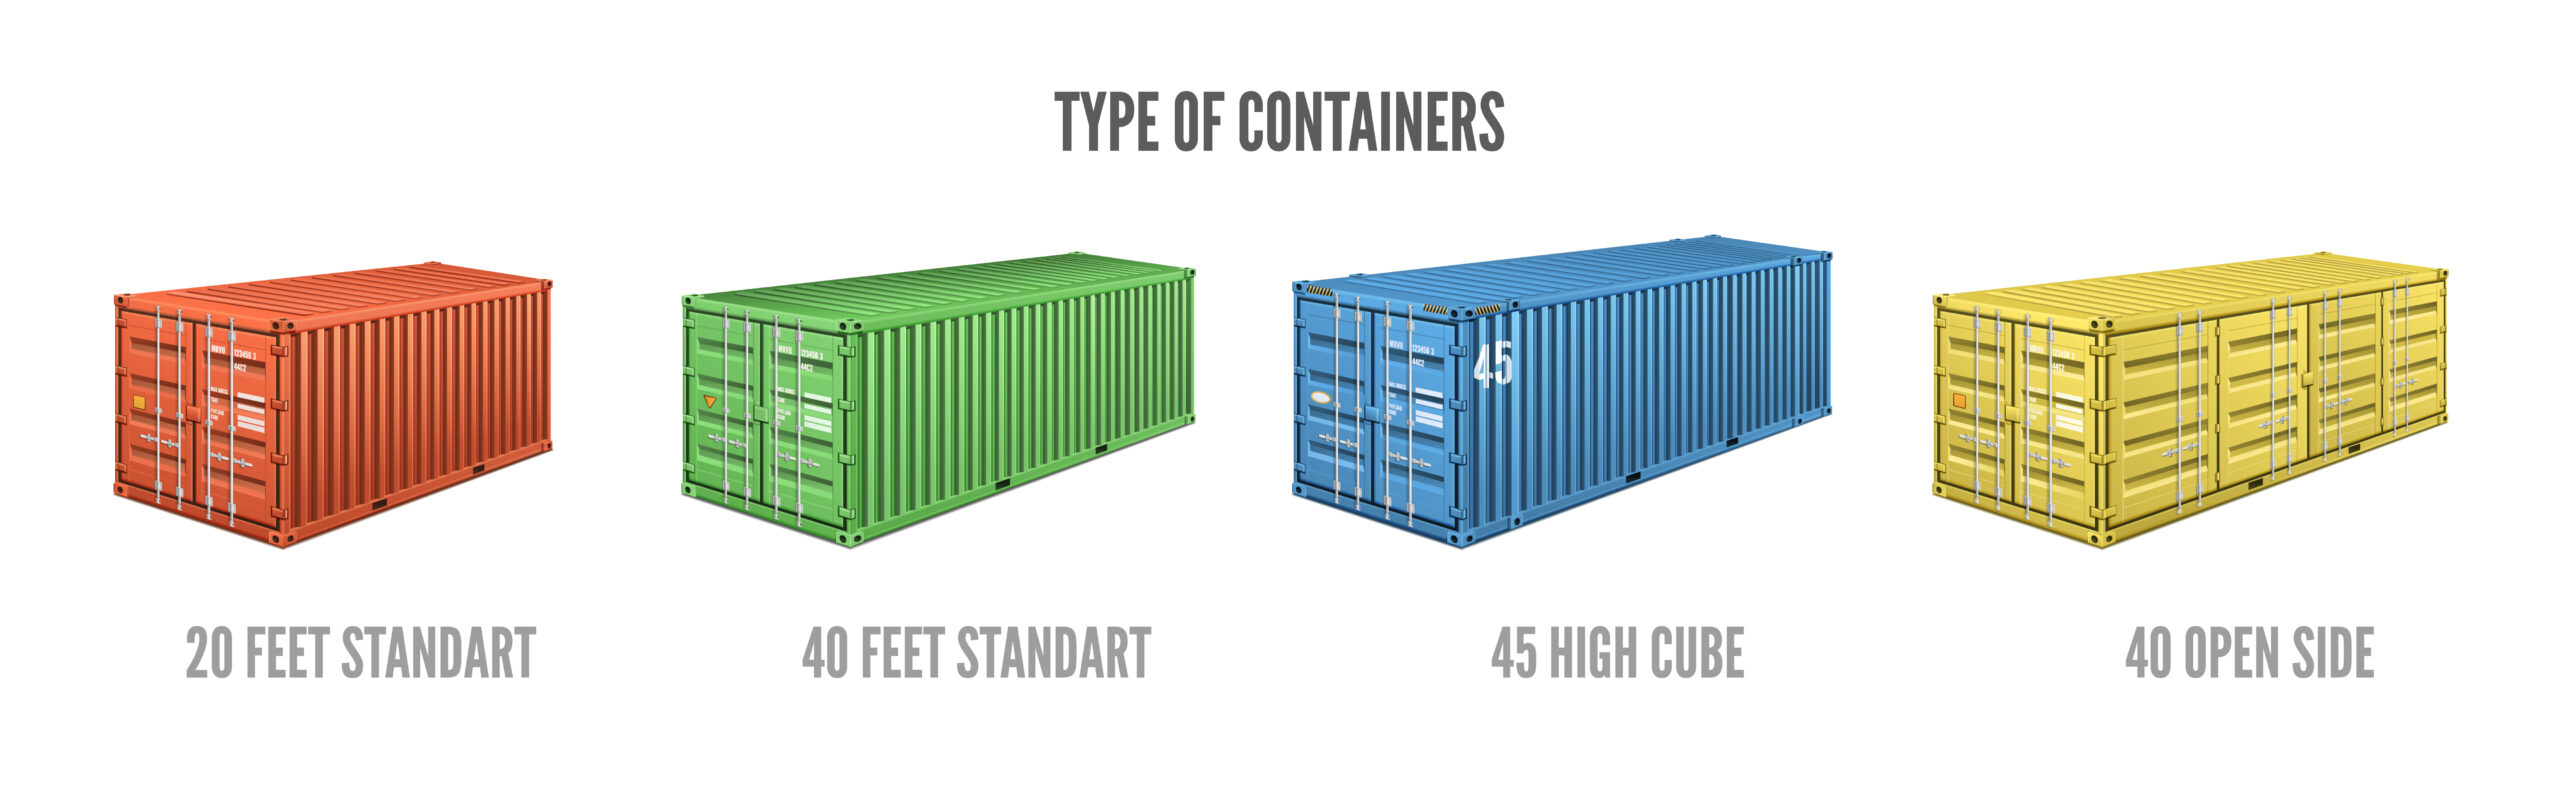 Jenis Container Berdasarkan Ukurannya